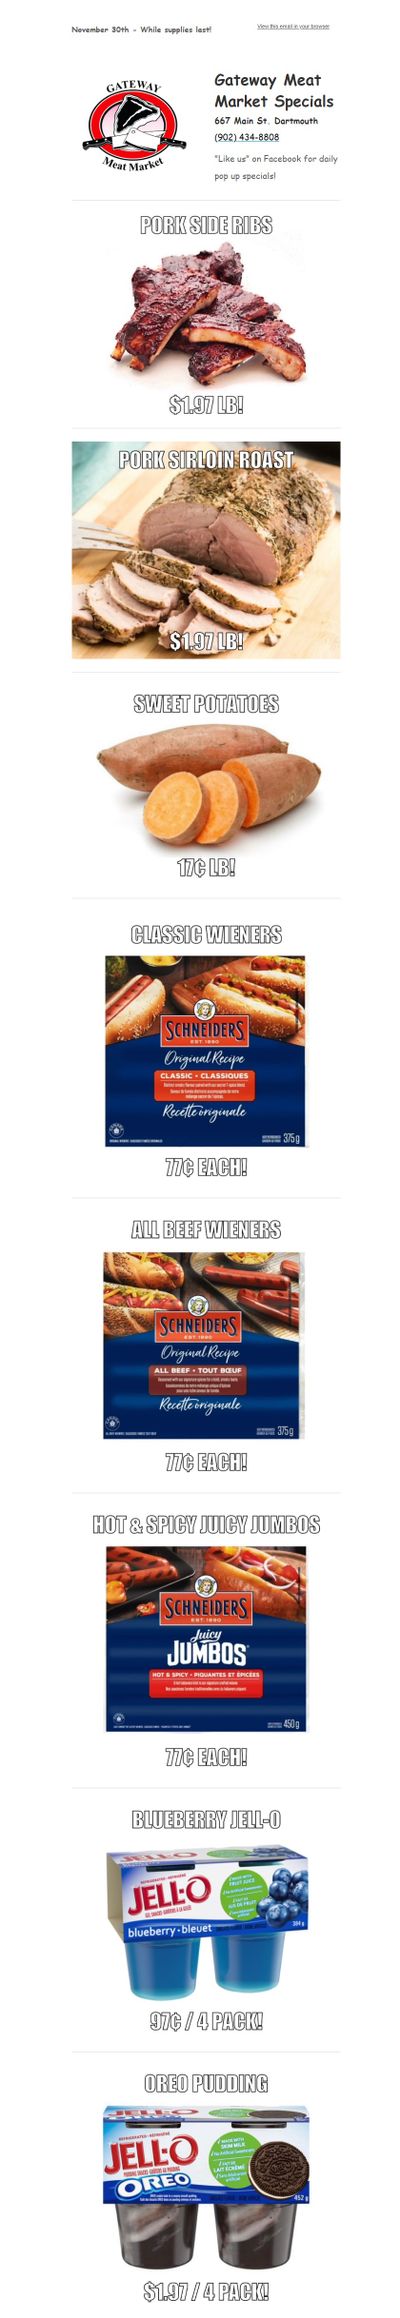 Gateway Meat Market Flyer November 30 to December 6